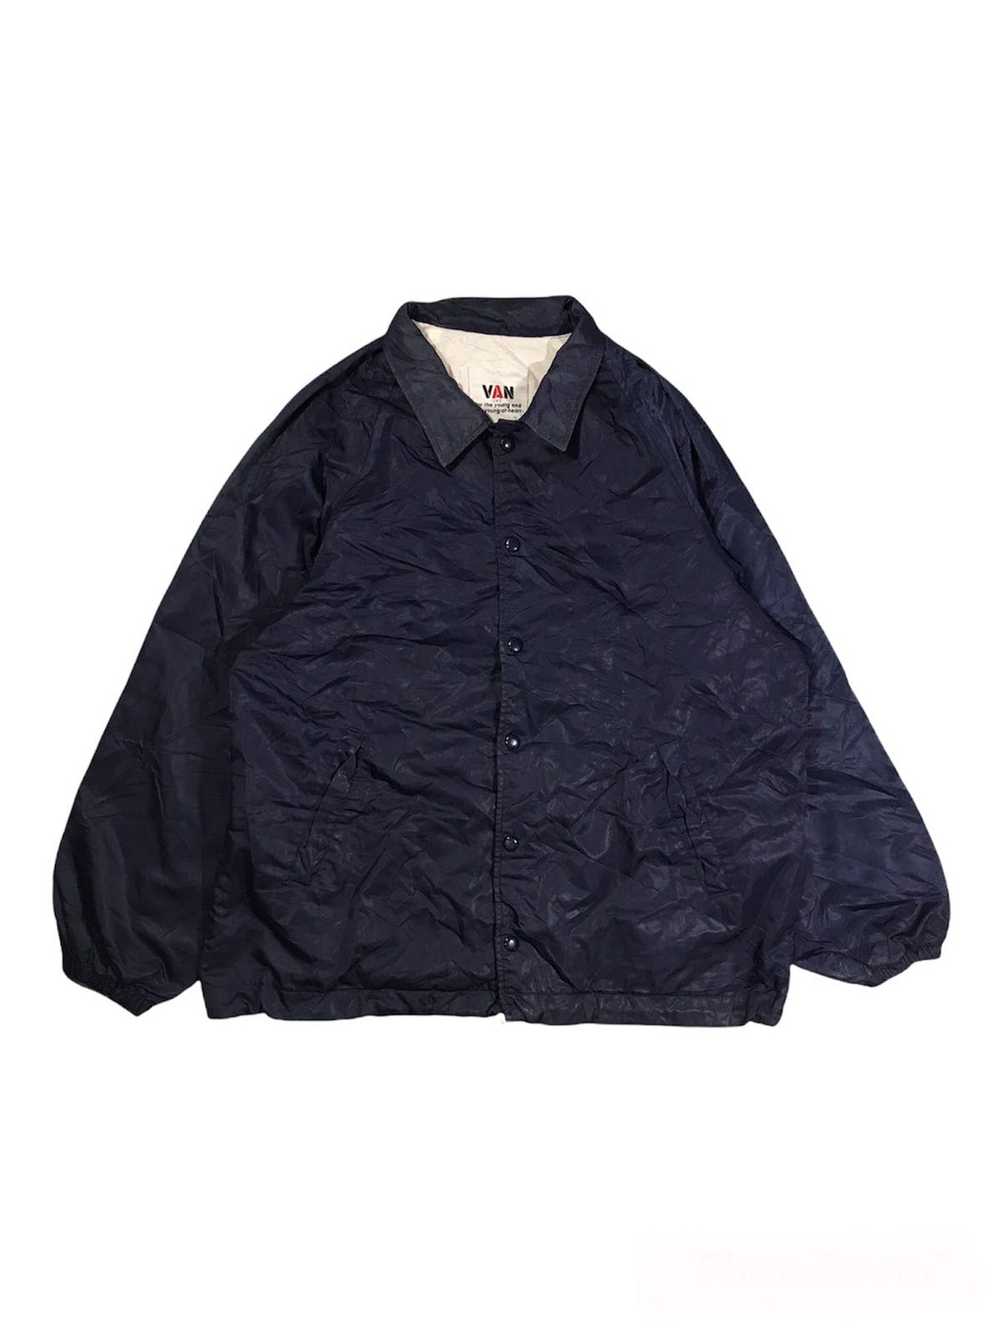 Van × Vintage Vintage Van Jac jacket - image 2